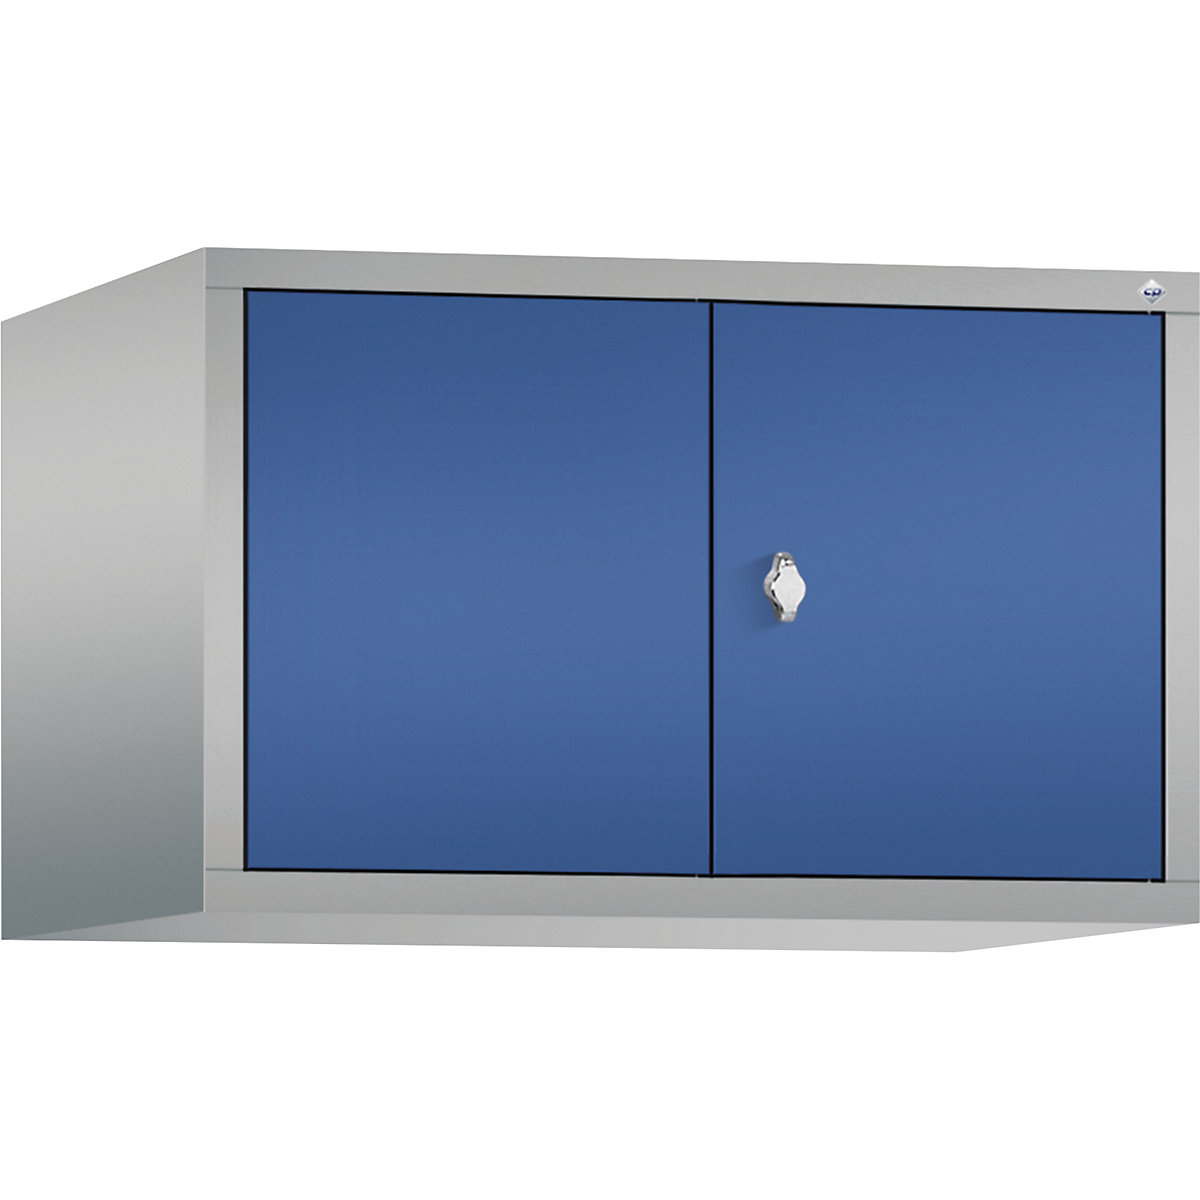 C+P – Altillo CLASSIC, puertas batientes que cierran al ras entre sí, 2 compartimentos, anchura de compartimento 400 mm, aluminio blanco / azul genciana